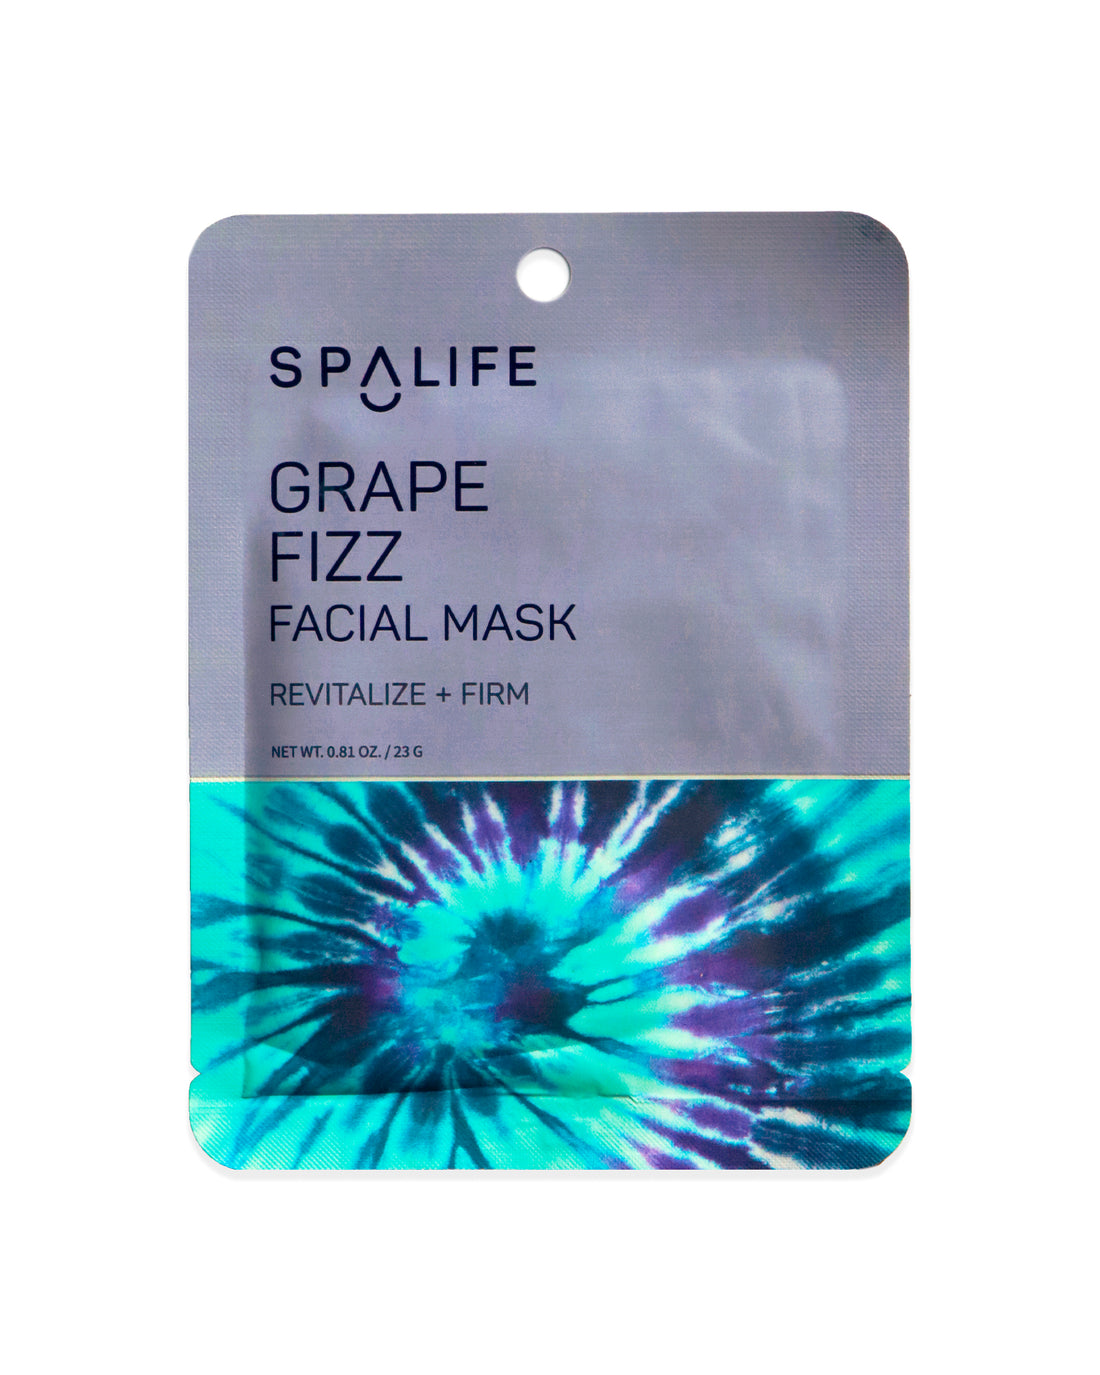 Grape_fizz_facial_mask_packet-639